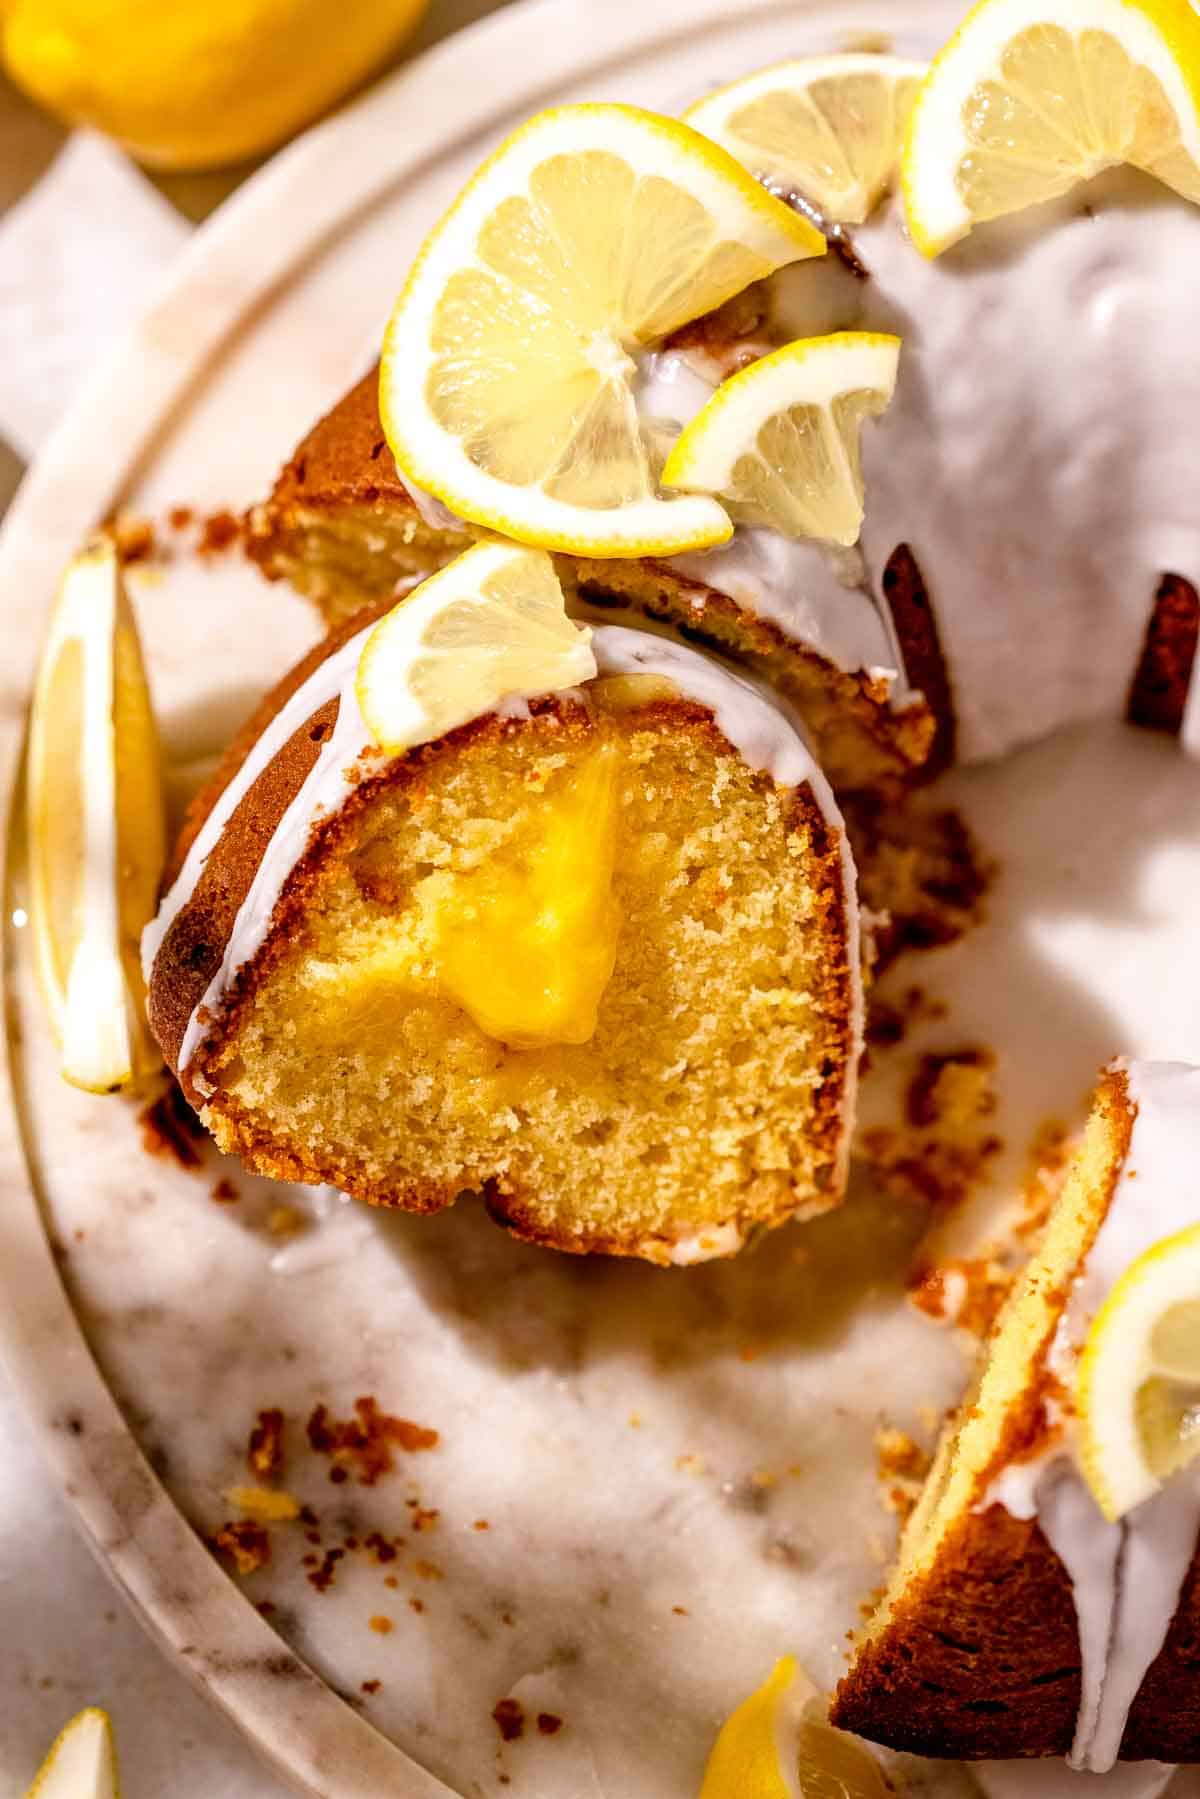 A close-up shot of sliced lemonade bundt cake with sliced lemons on top.